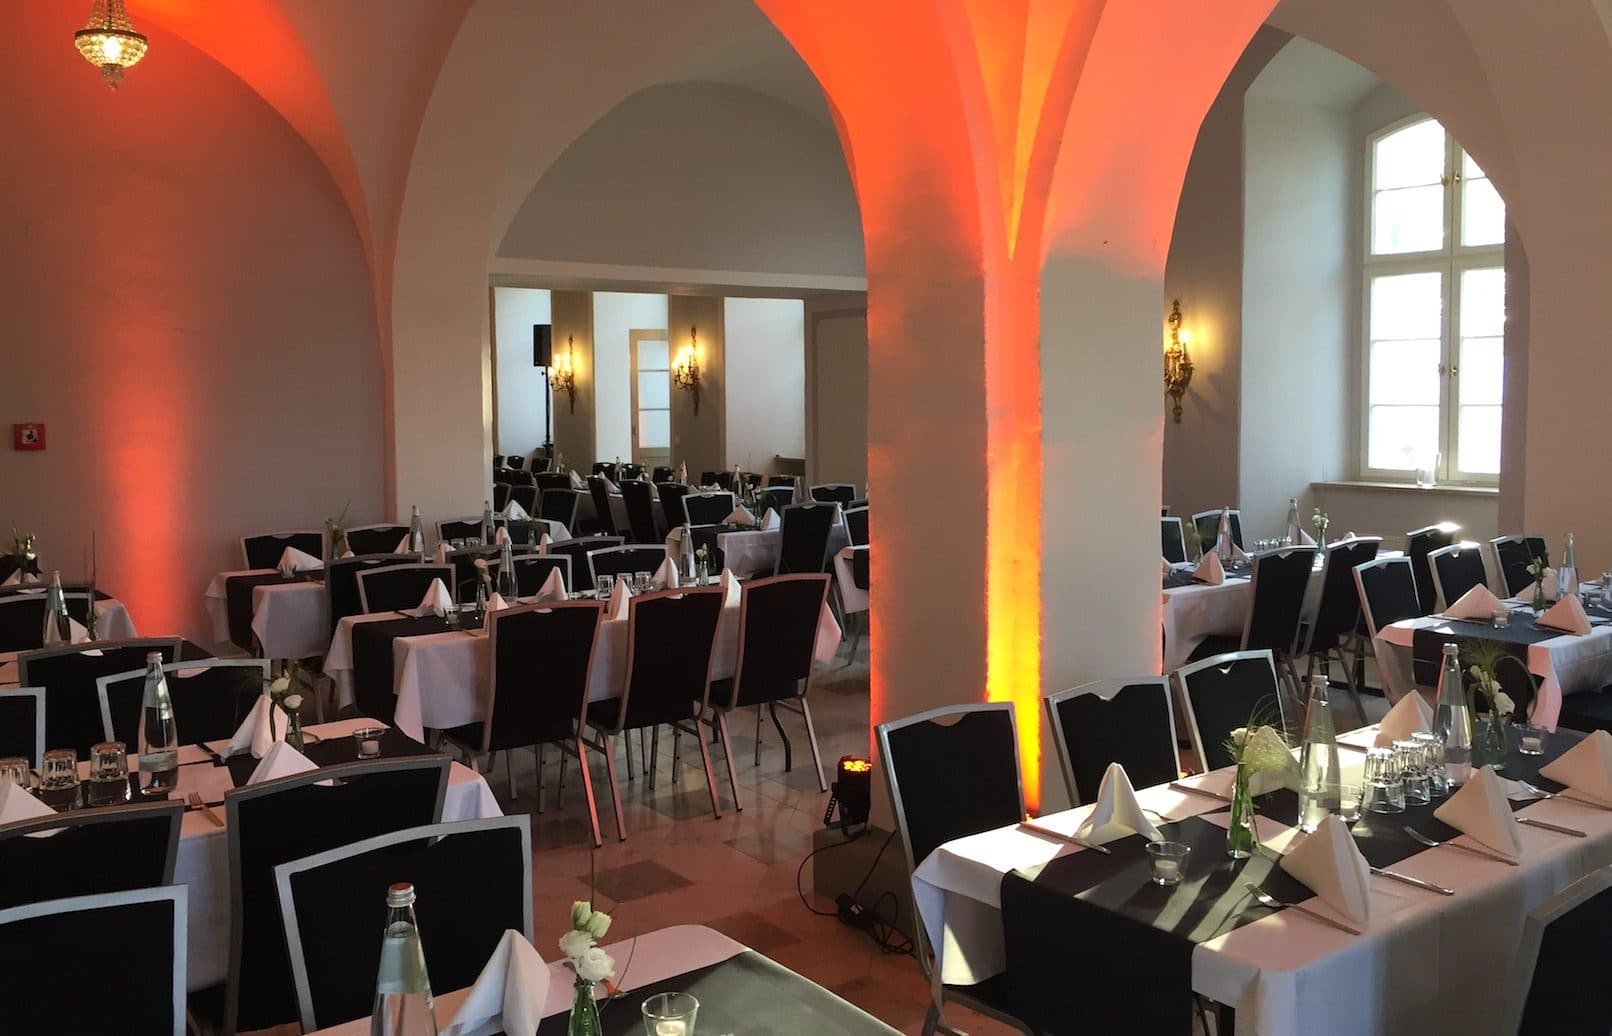 Eventlocation Kreuzsaal im Schloss Jaegersburg. Für eine Firmenfeier geschmückter Raum